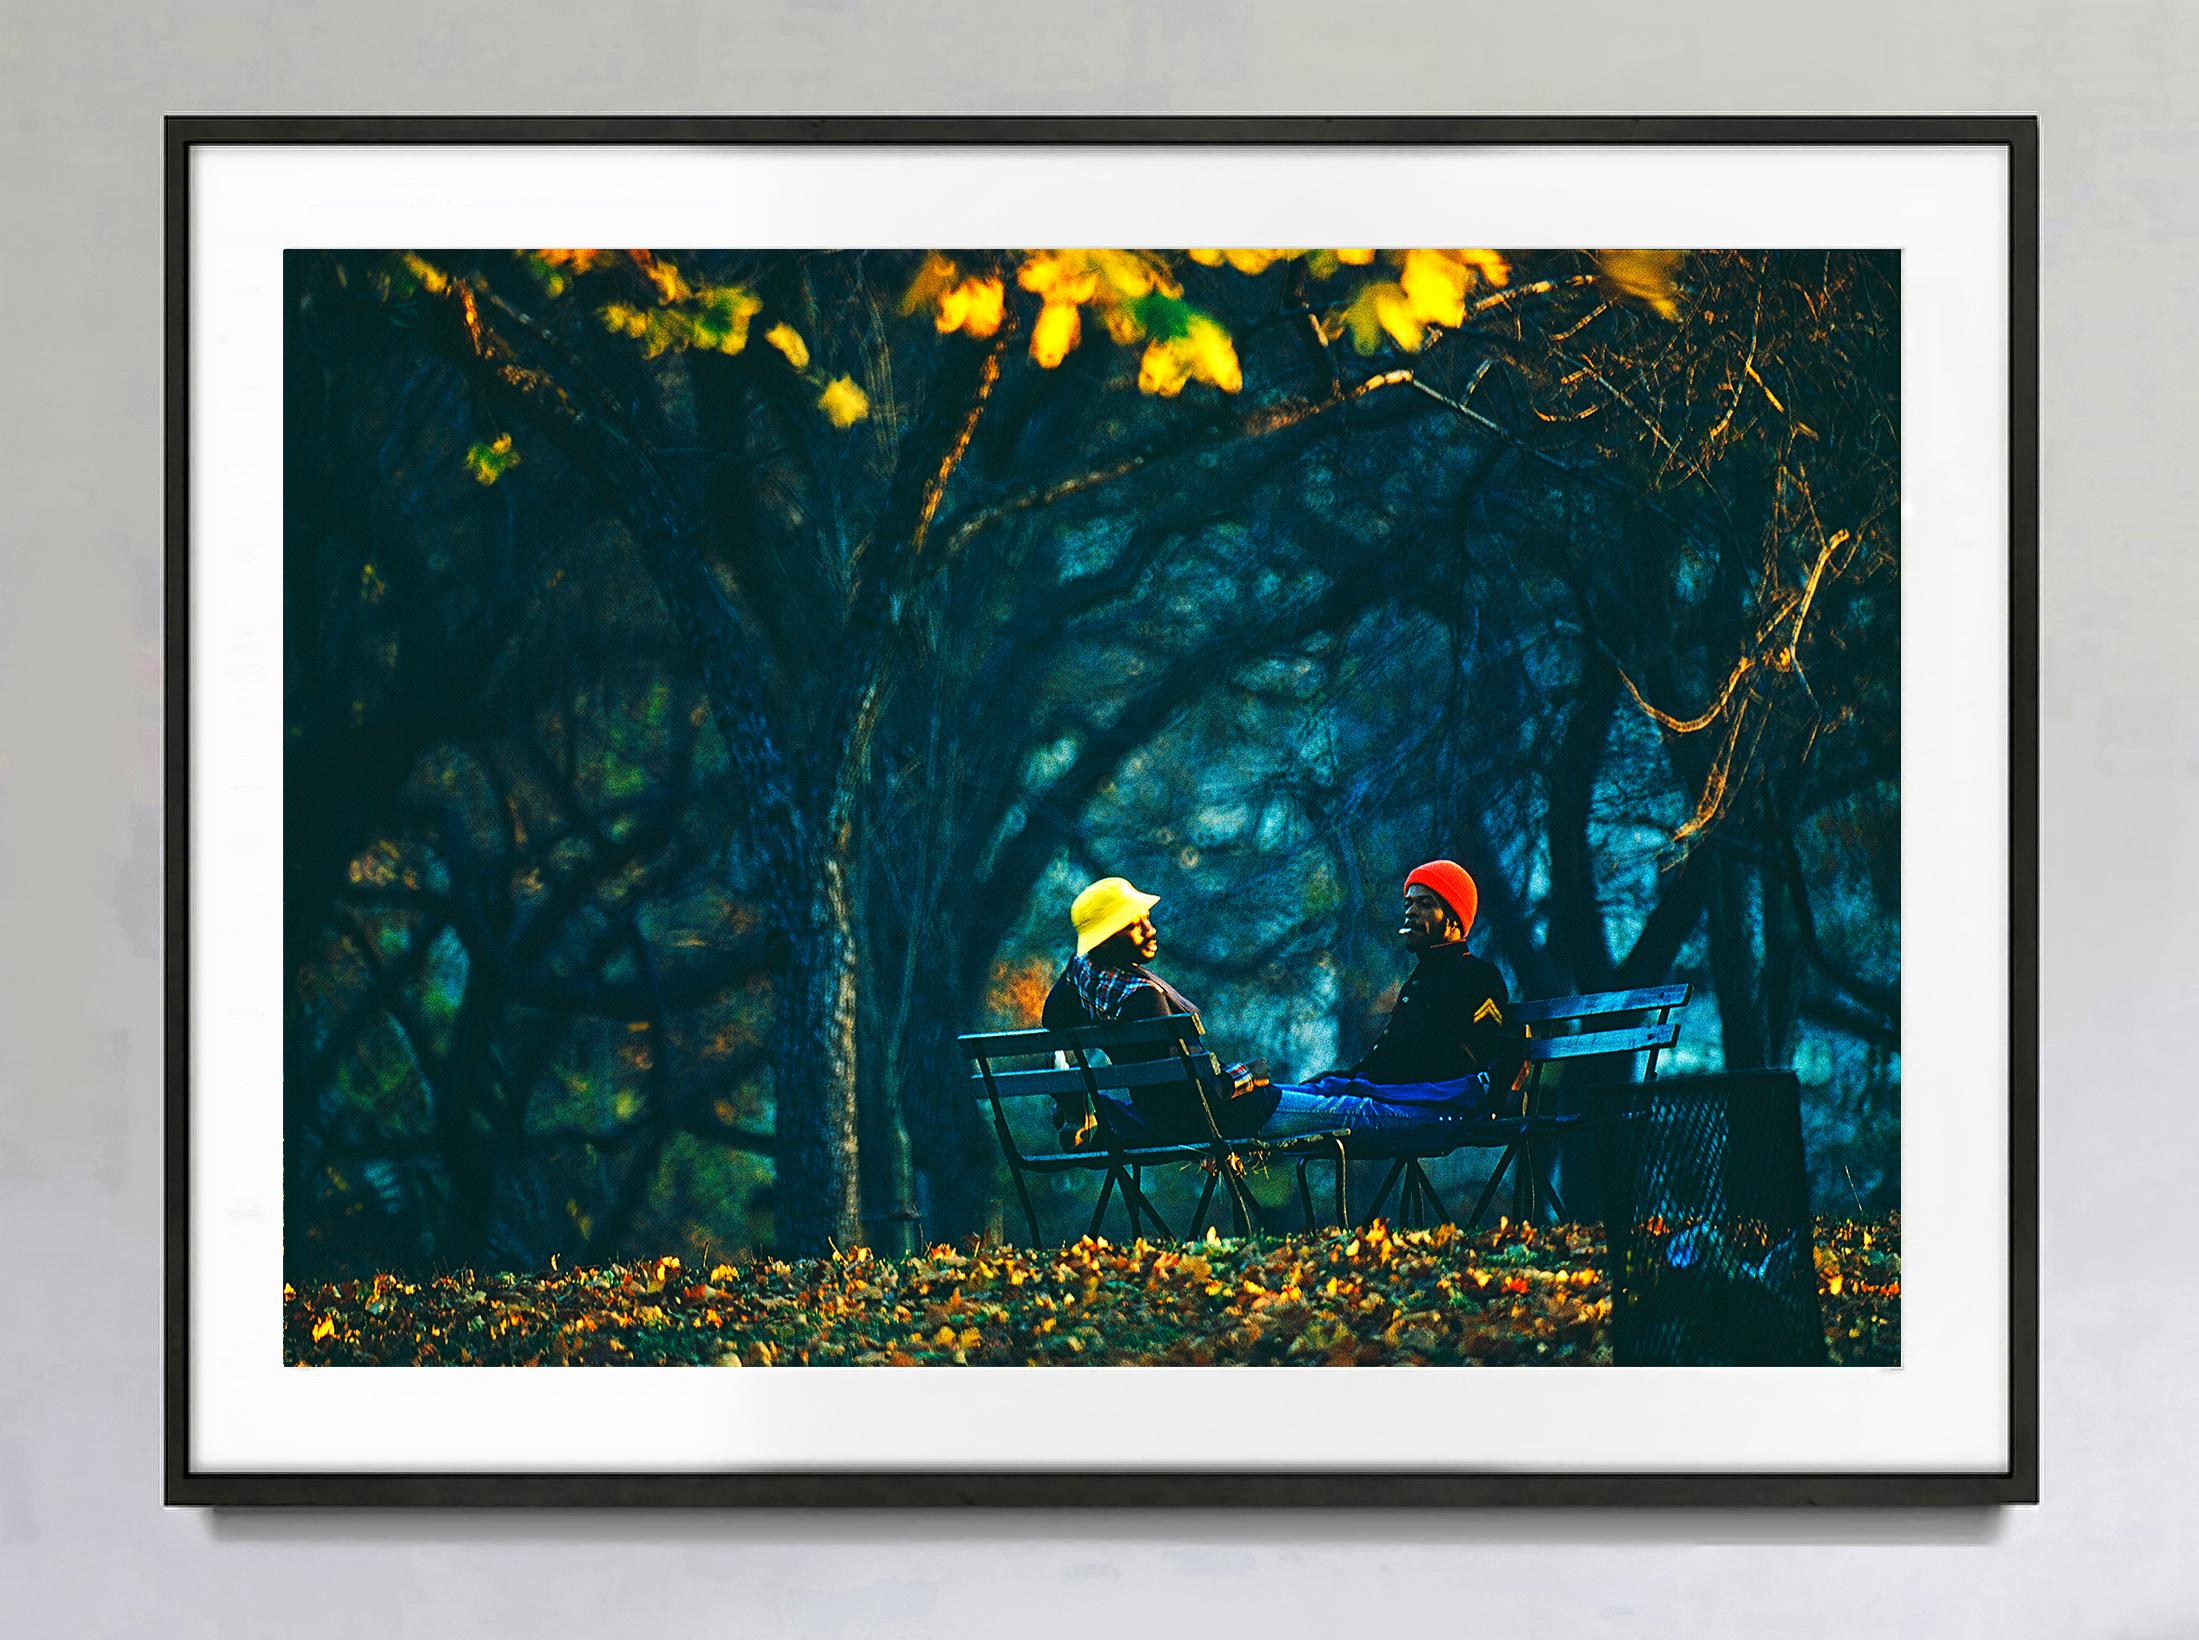 La conversation : La lumière impressionniste du tardif après-midi de Central Park - Photograph de Mitchell Funk